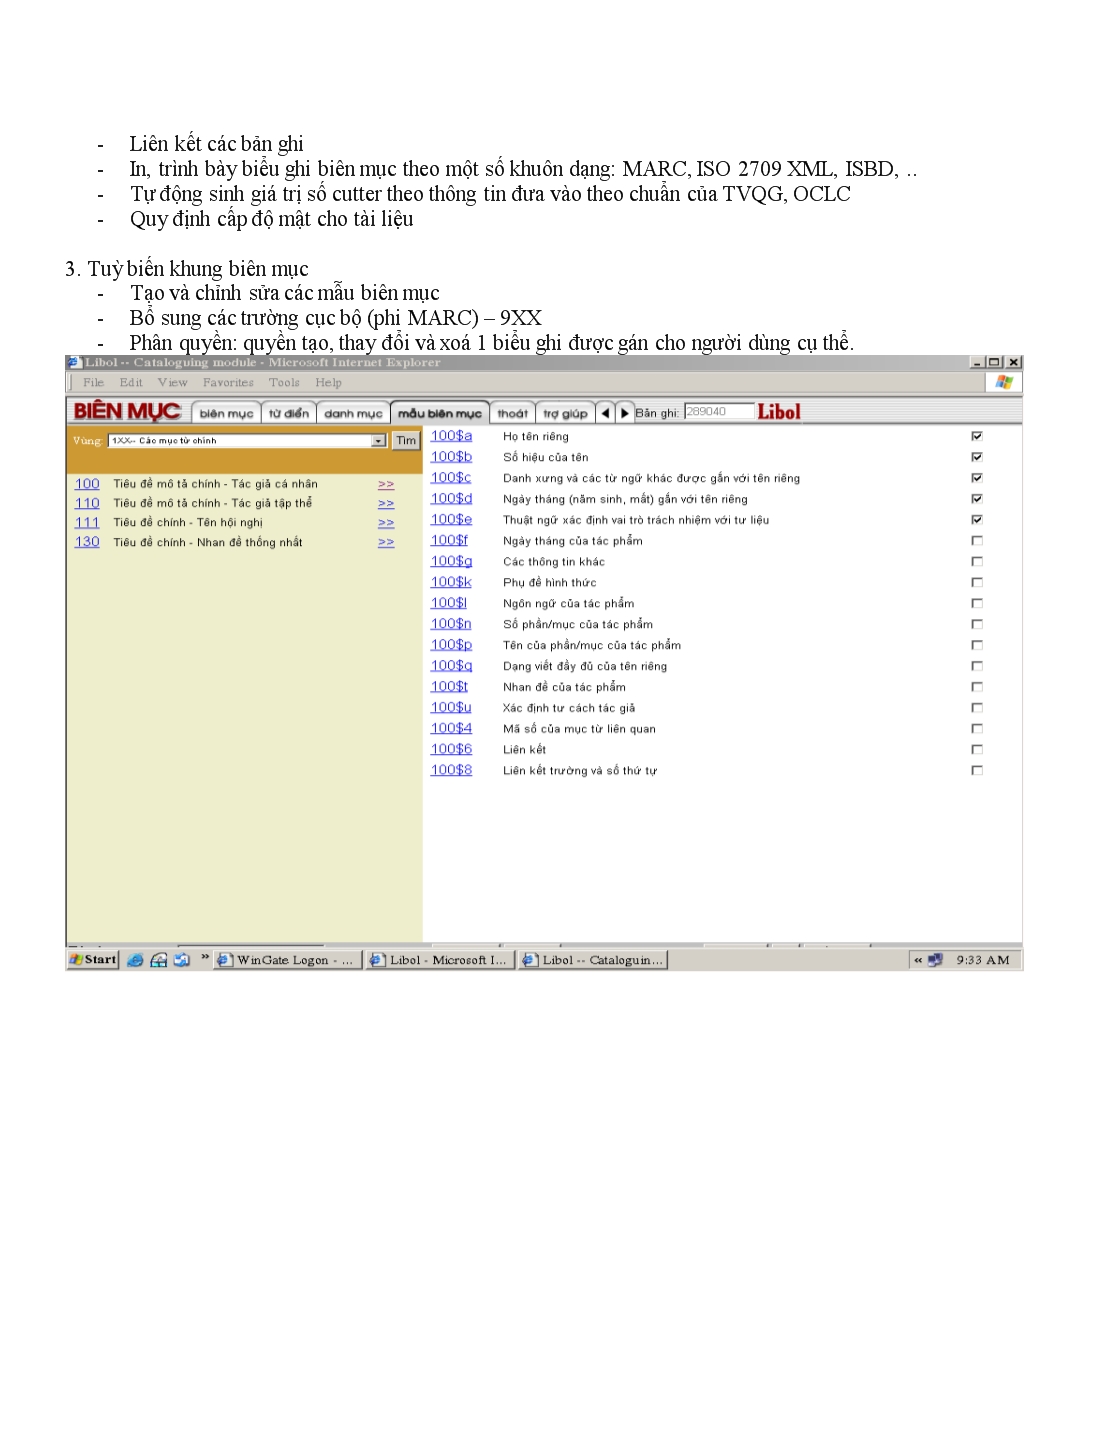 Yêu cầu chi tiết các phân hệ của phần mềm quản trị thư viện tích hợp libol trang 4